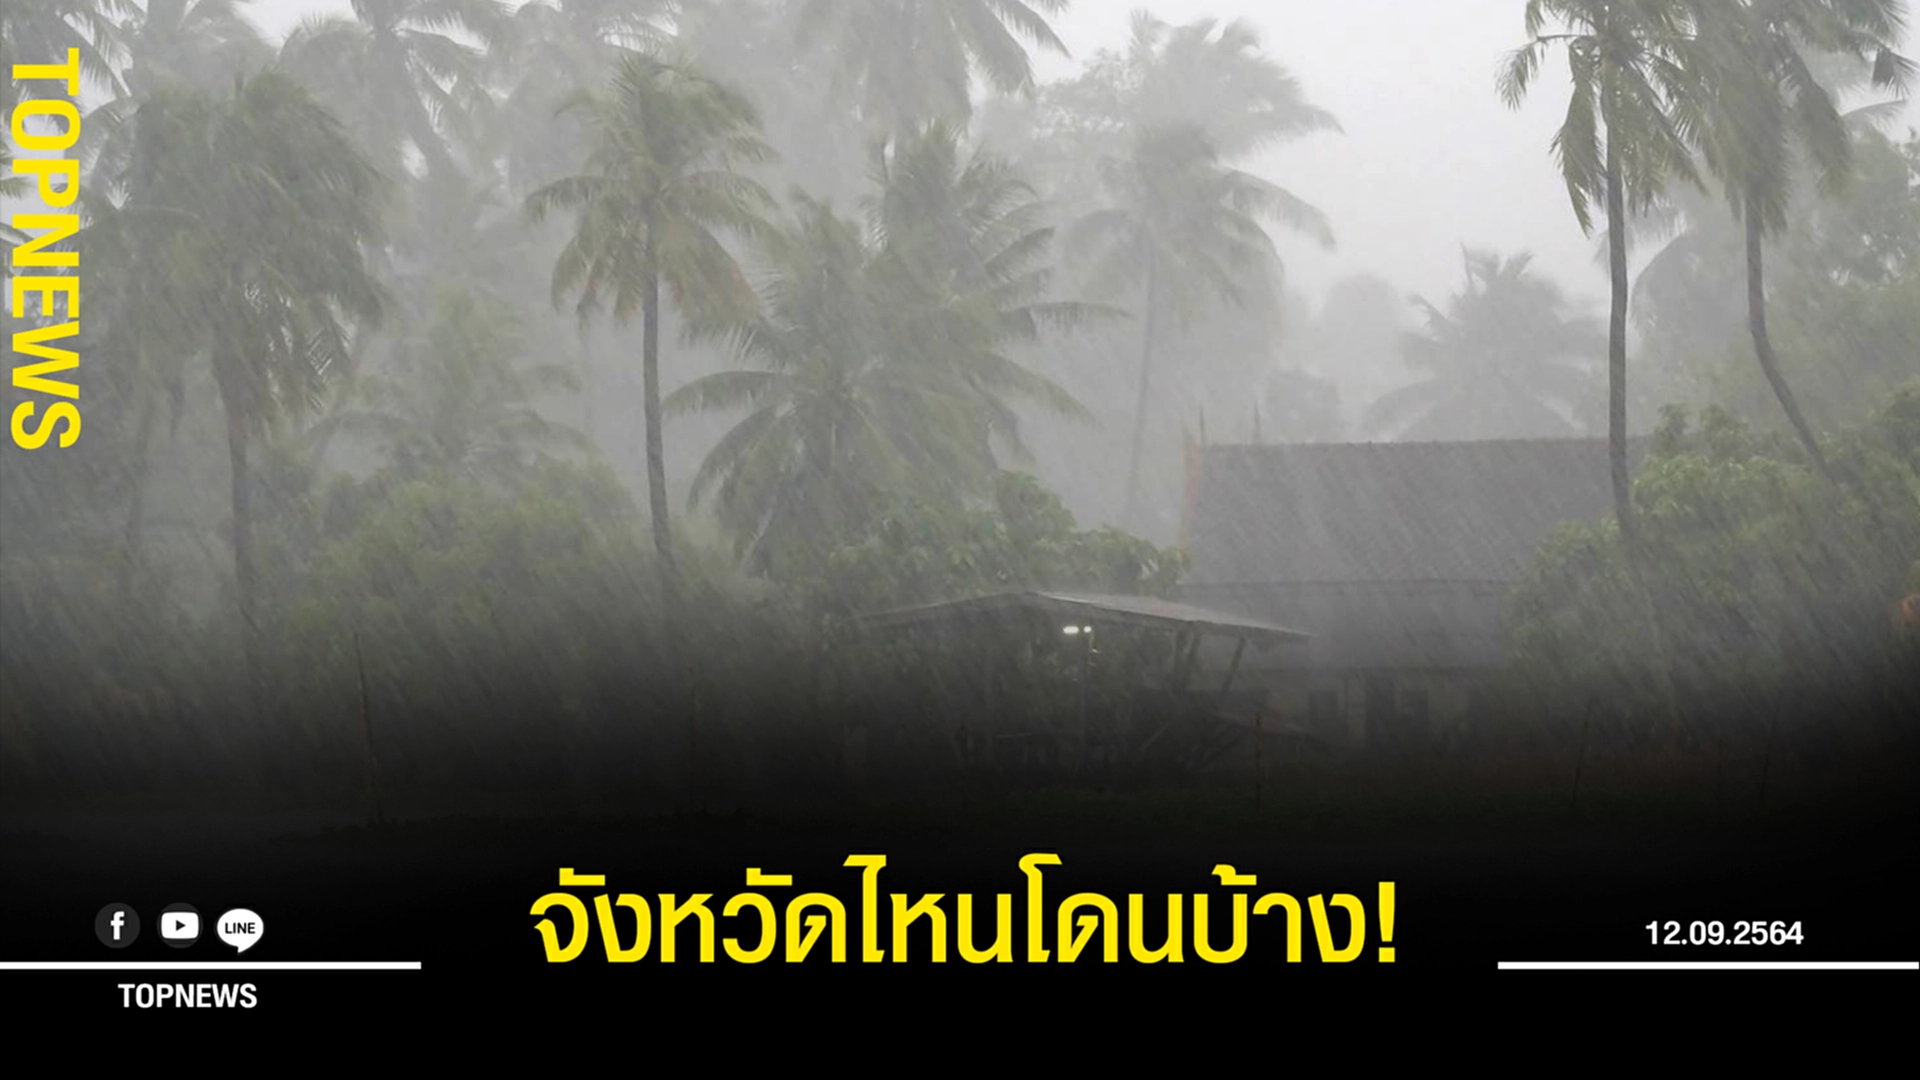 จังหวัดไหนโดนบ้าง! กรมอุตุฯ เตือน พายุโซนร้อน ‘โกนเซิน’  ถล่มไทย ทำฝนตกหนักหลายจังหวัด!